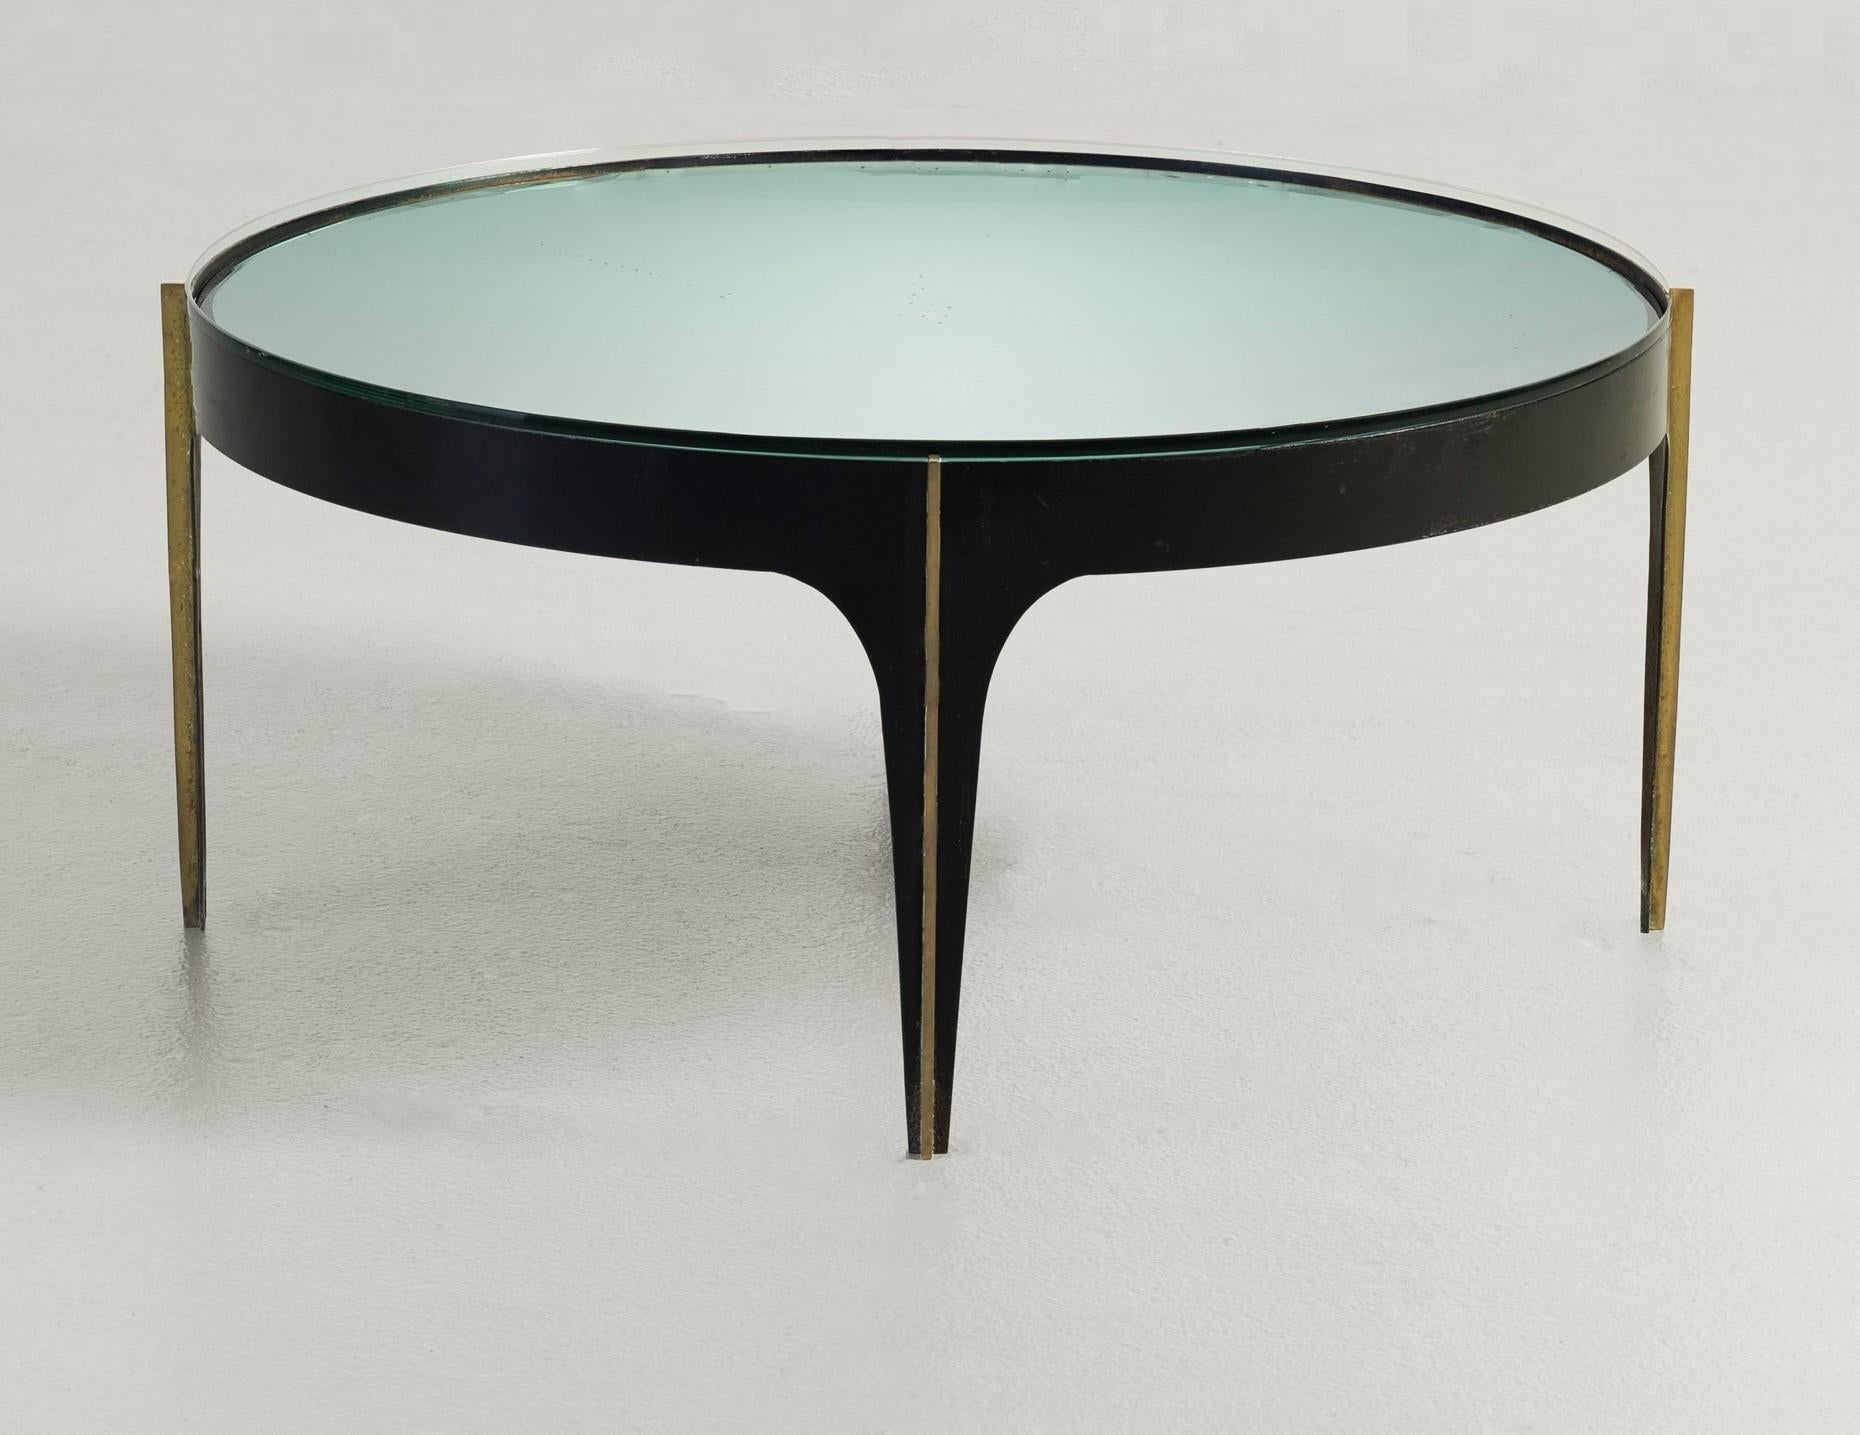 Table basse fabriquée en Italie par Fontana Art, modèle 1774, conçue par Max Ingrand, vers 1958. La base est en fer noirci courbé avec des profils en laiton massif fixés aux pieds. Le plateau de la table est composé de deux parties distinctes : 1